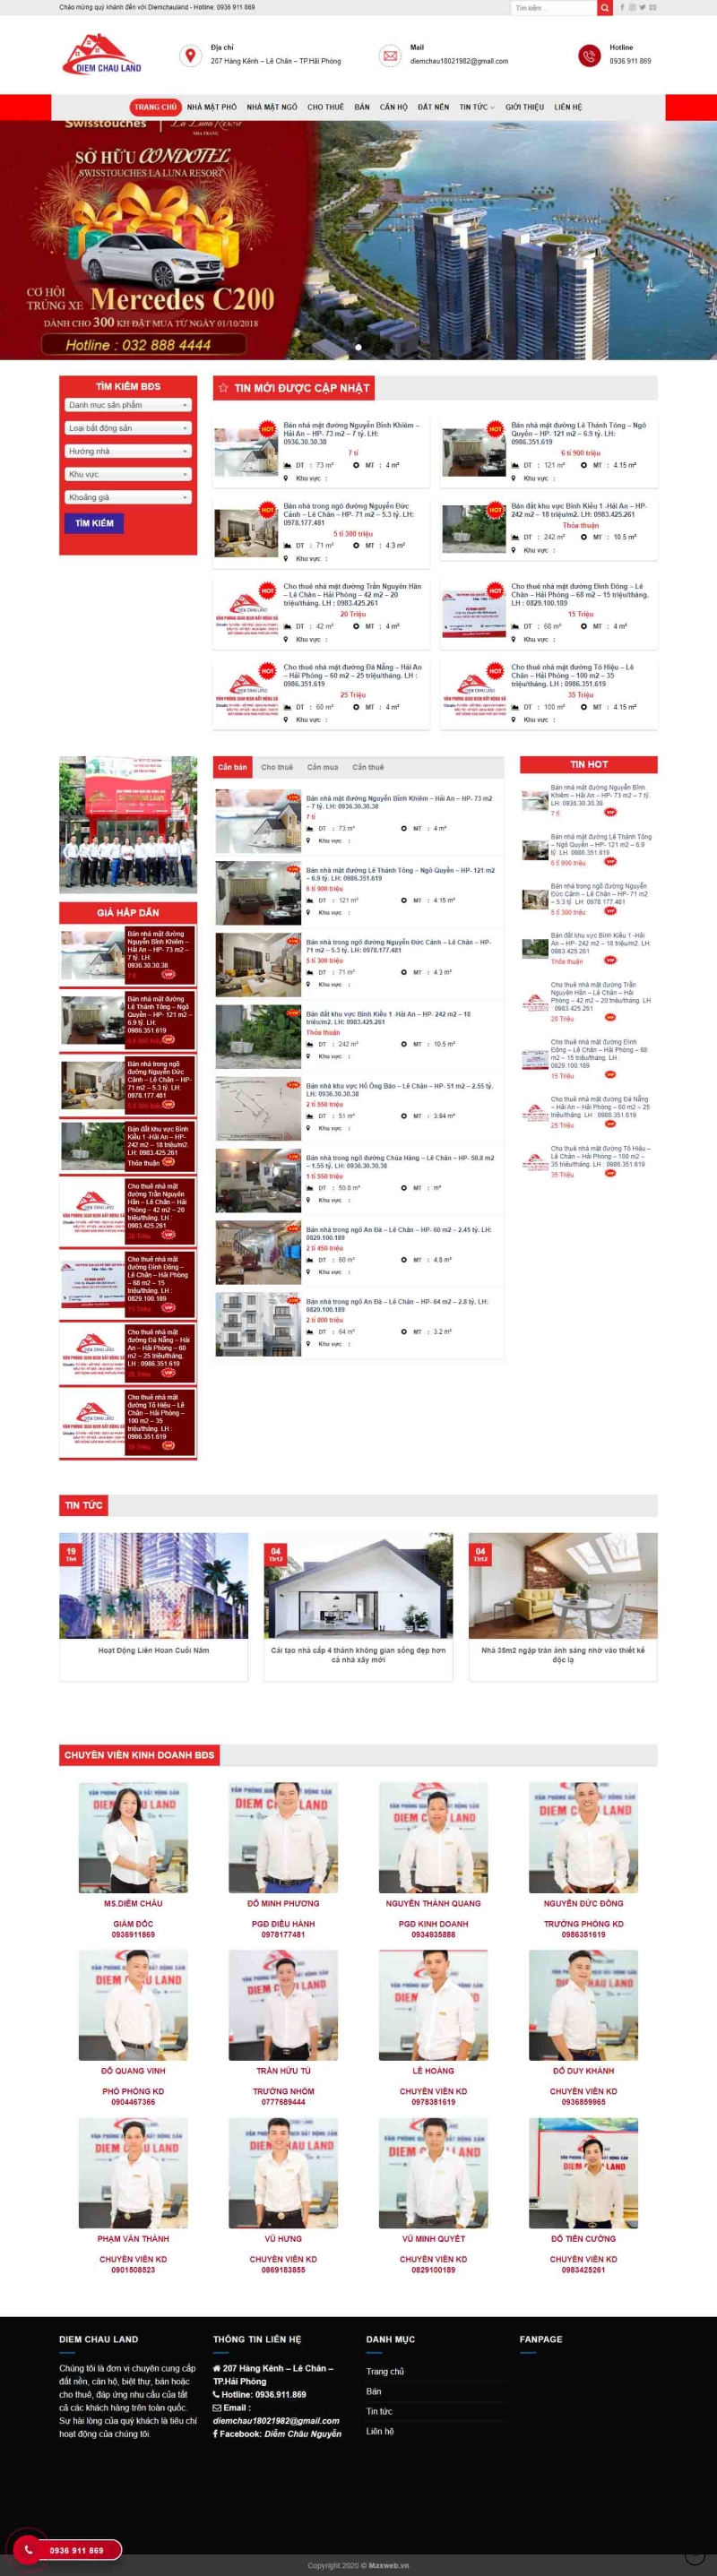 Mẫu giao diện thiết kế website bất động sản, mua bán nhà đất